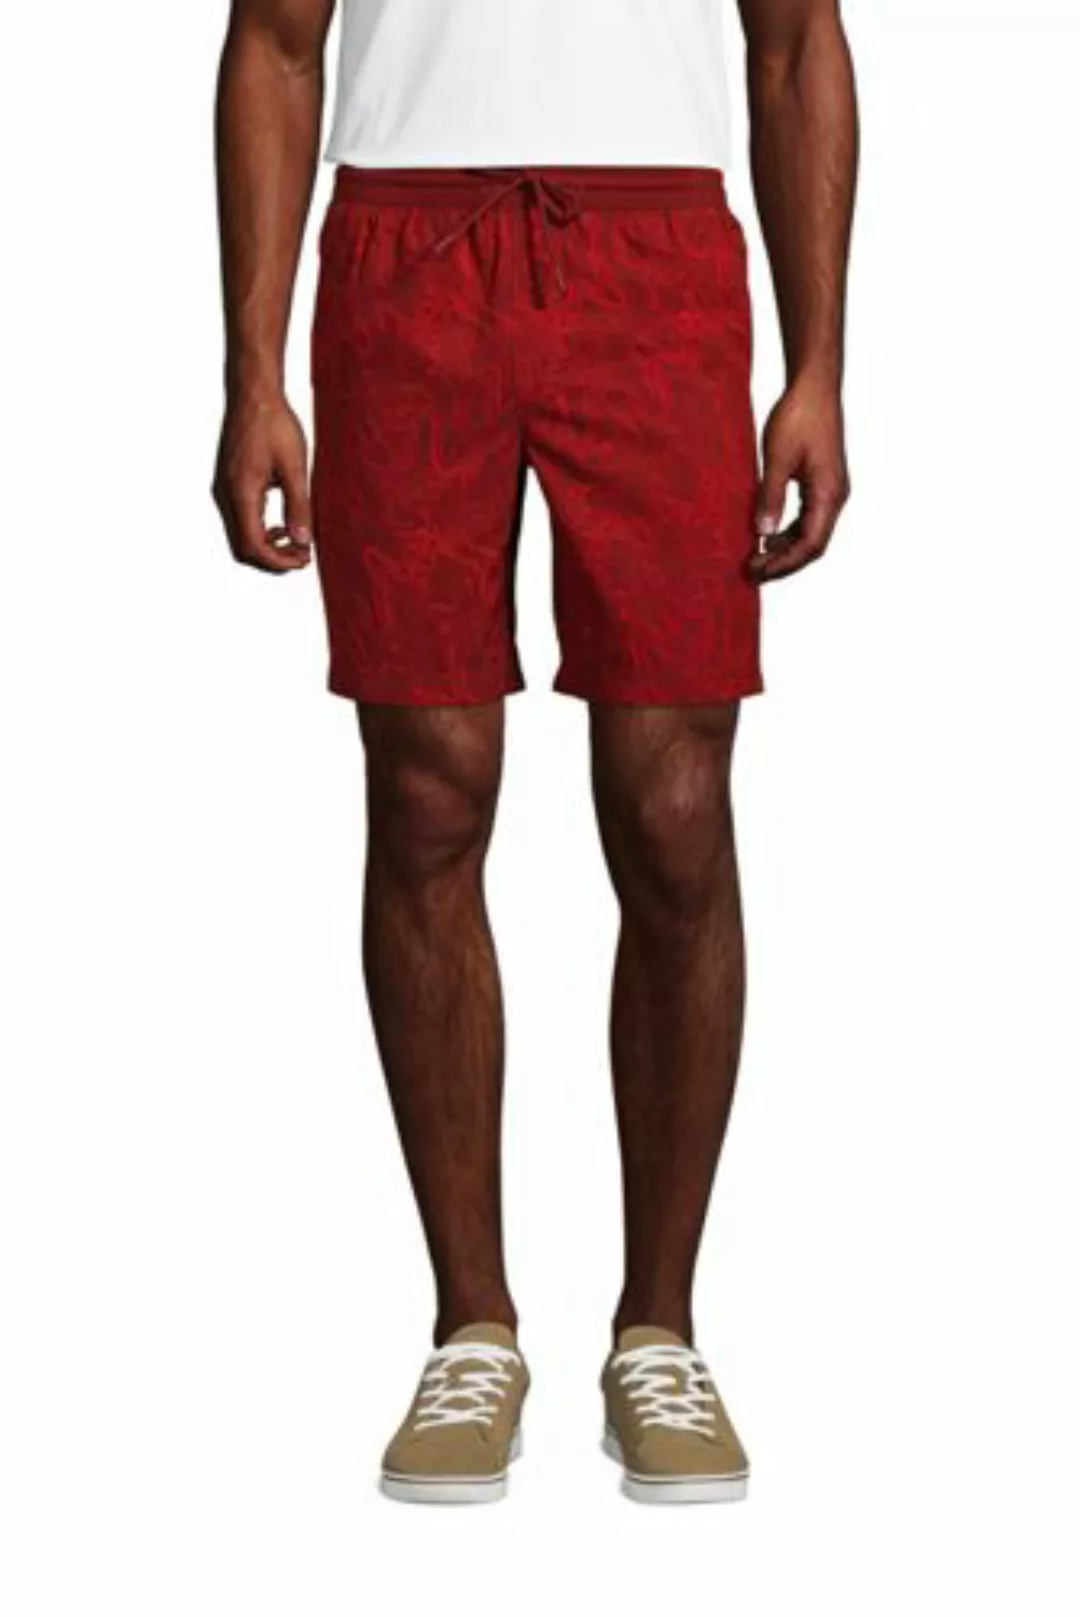 Performance Chino-Shorts, Herren, Größe: M Normal, Rot, Polyester-Mischung, günstig online kaufen